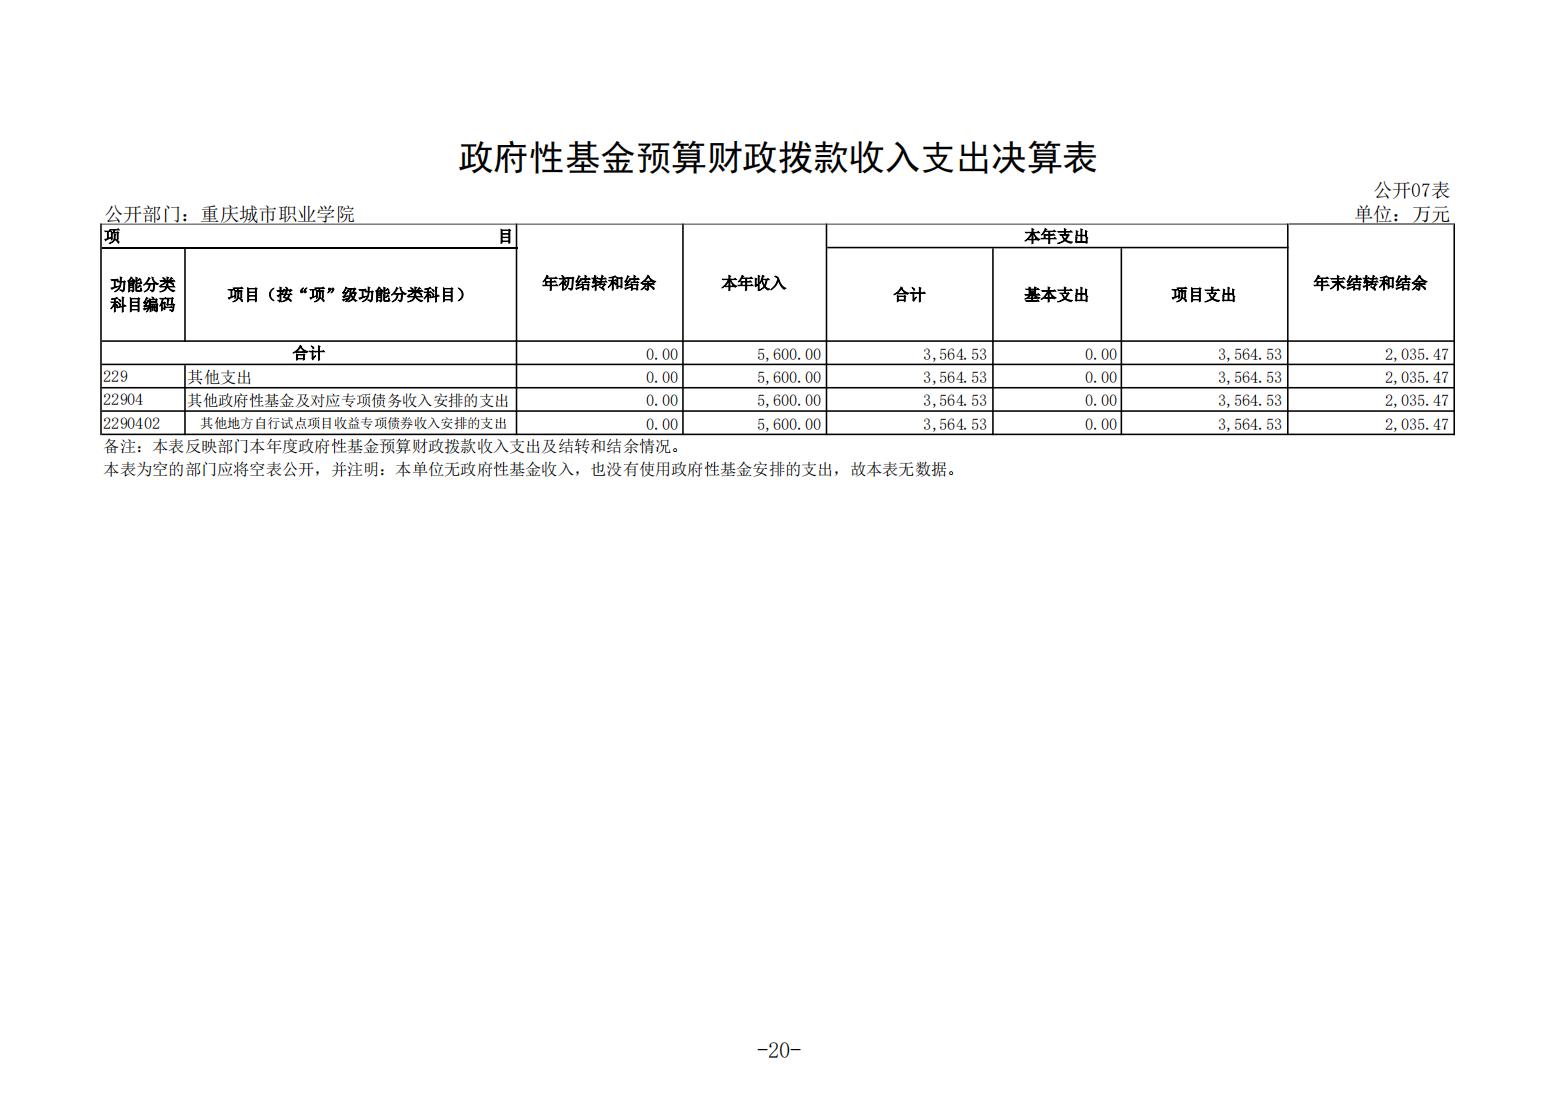 重庆城市职业学院2021年度部门决算情况说明_19.jpg